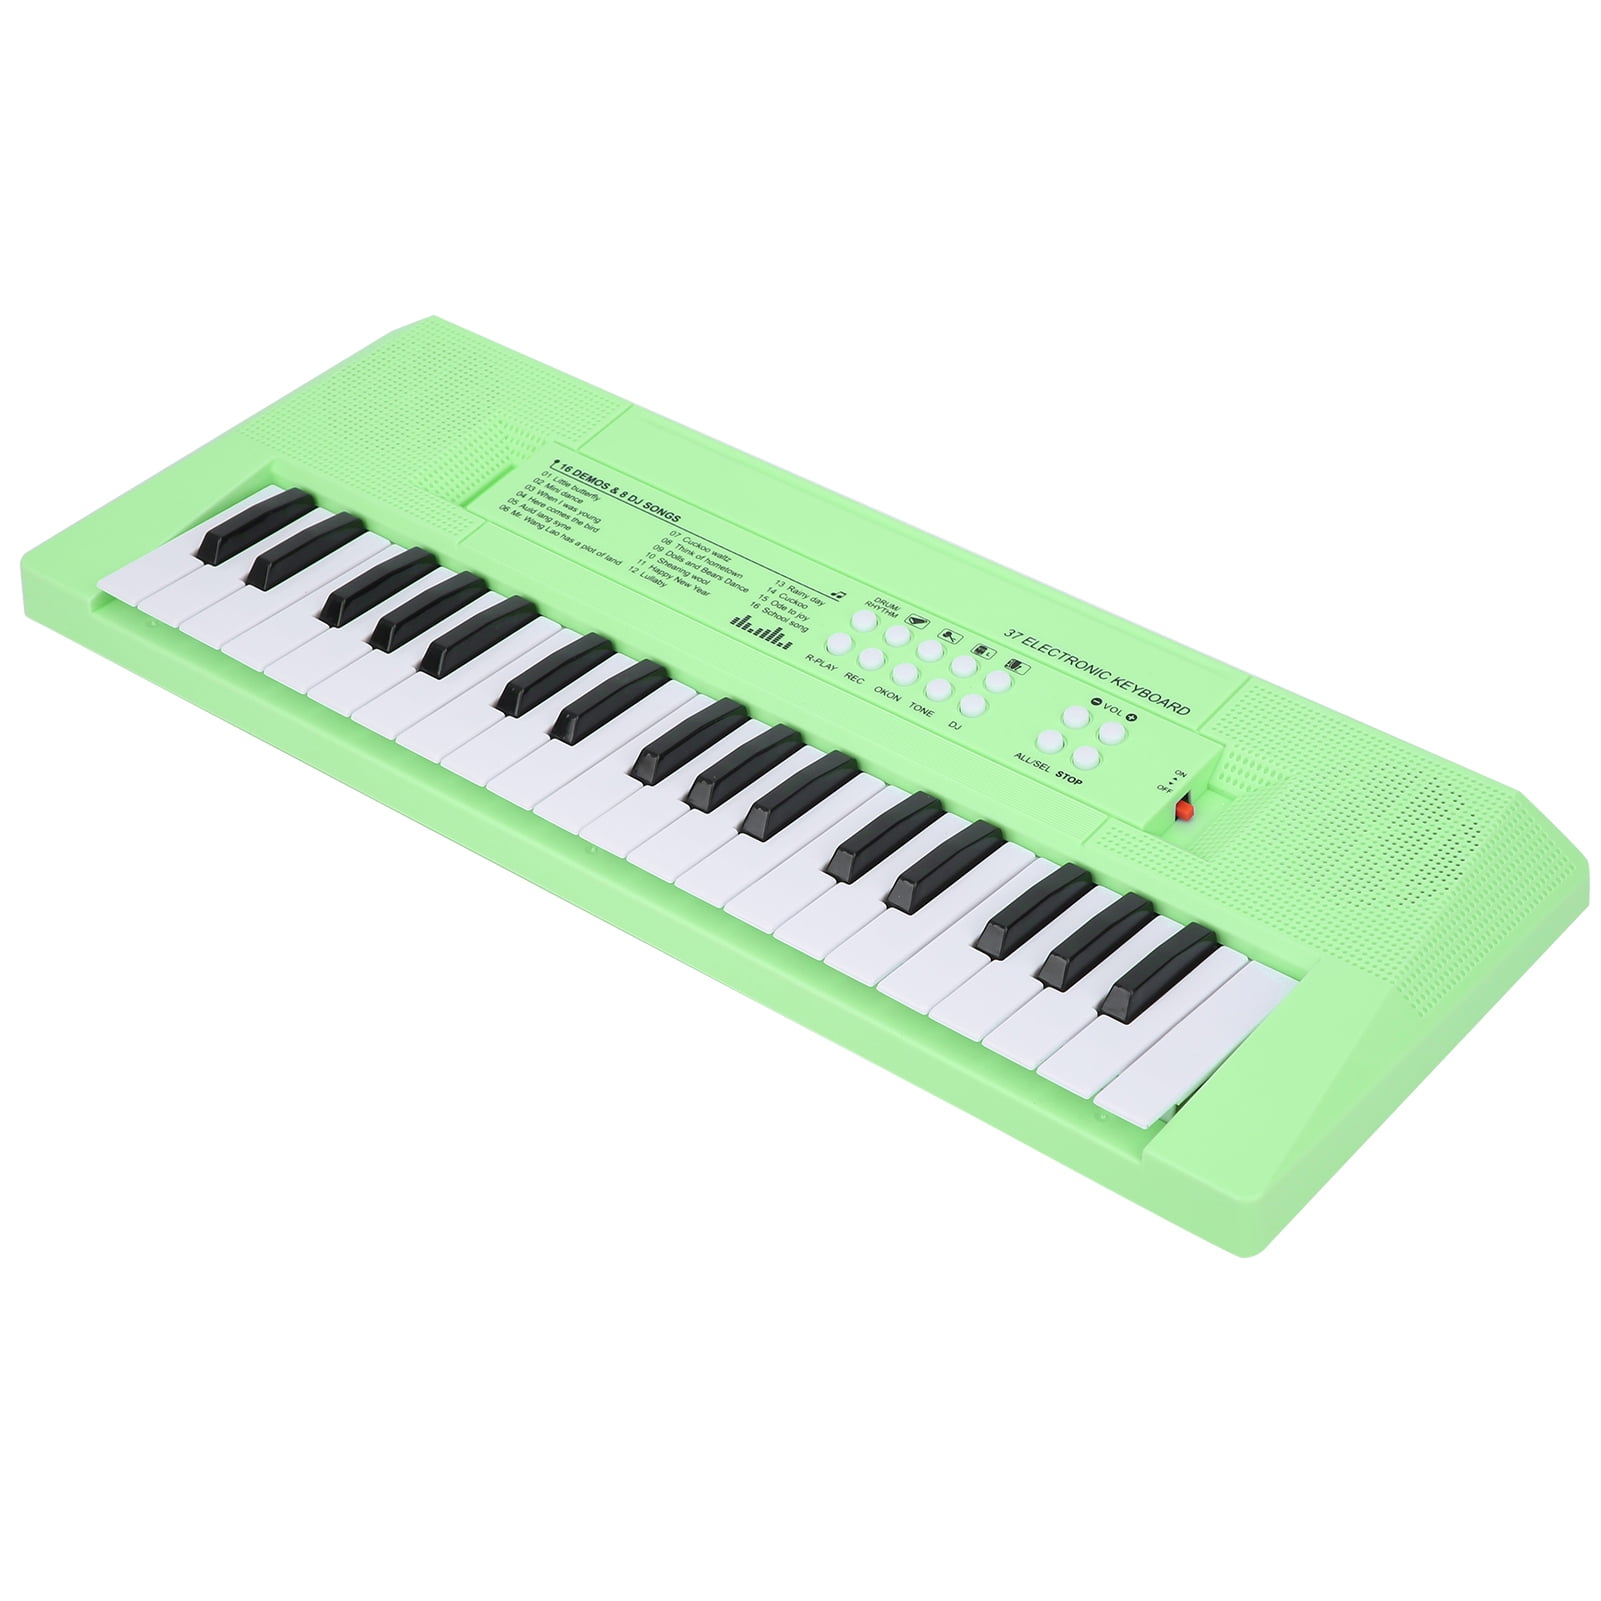 Rosado Garosa Piano Keyboard Toy 37 Keys Teclado eléctrico Musical multifunción Toy con micrófono para niños de 3 4 5 6 años Niñas o niños